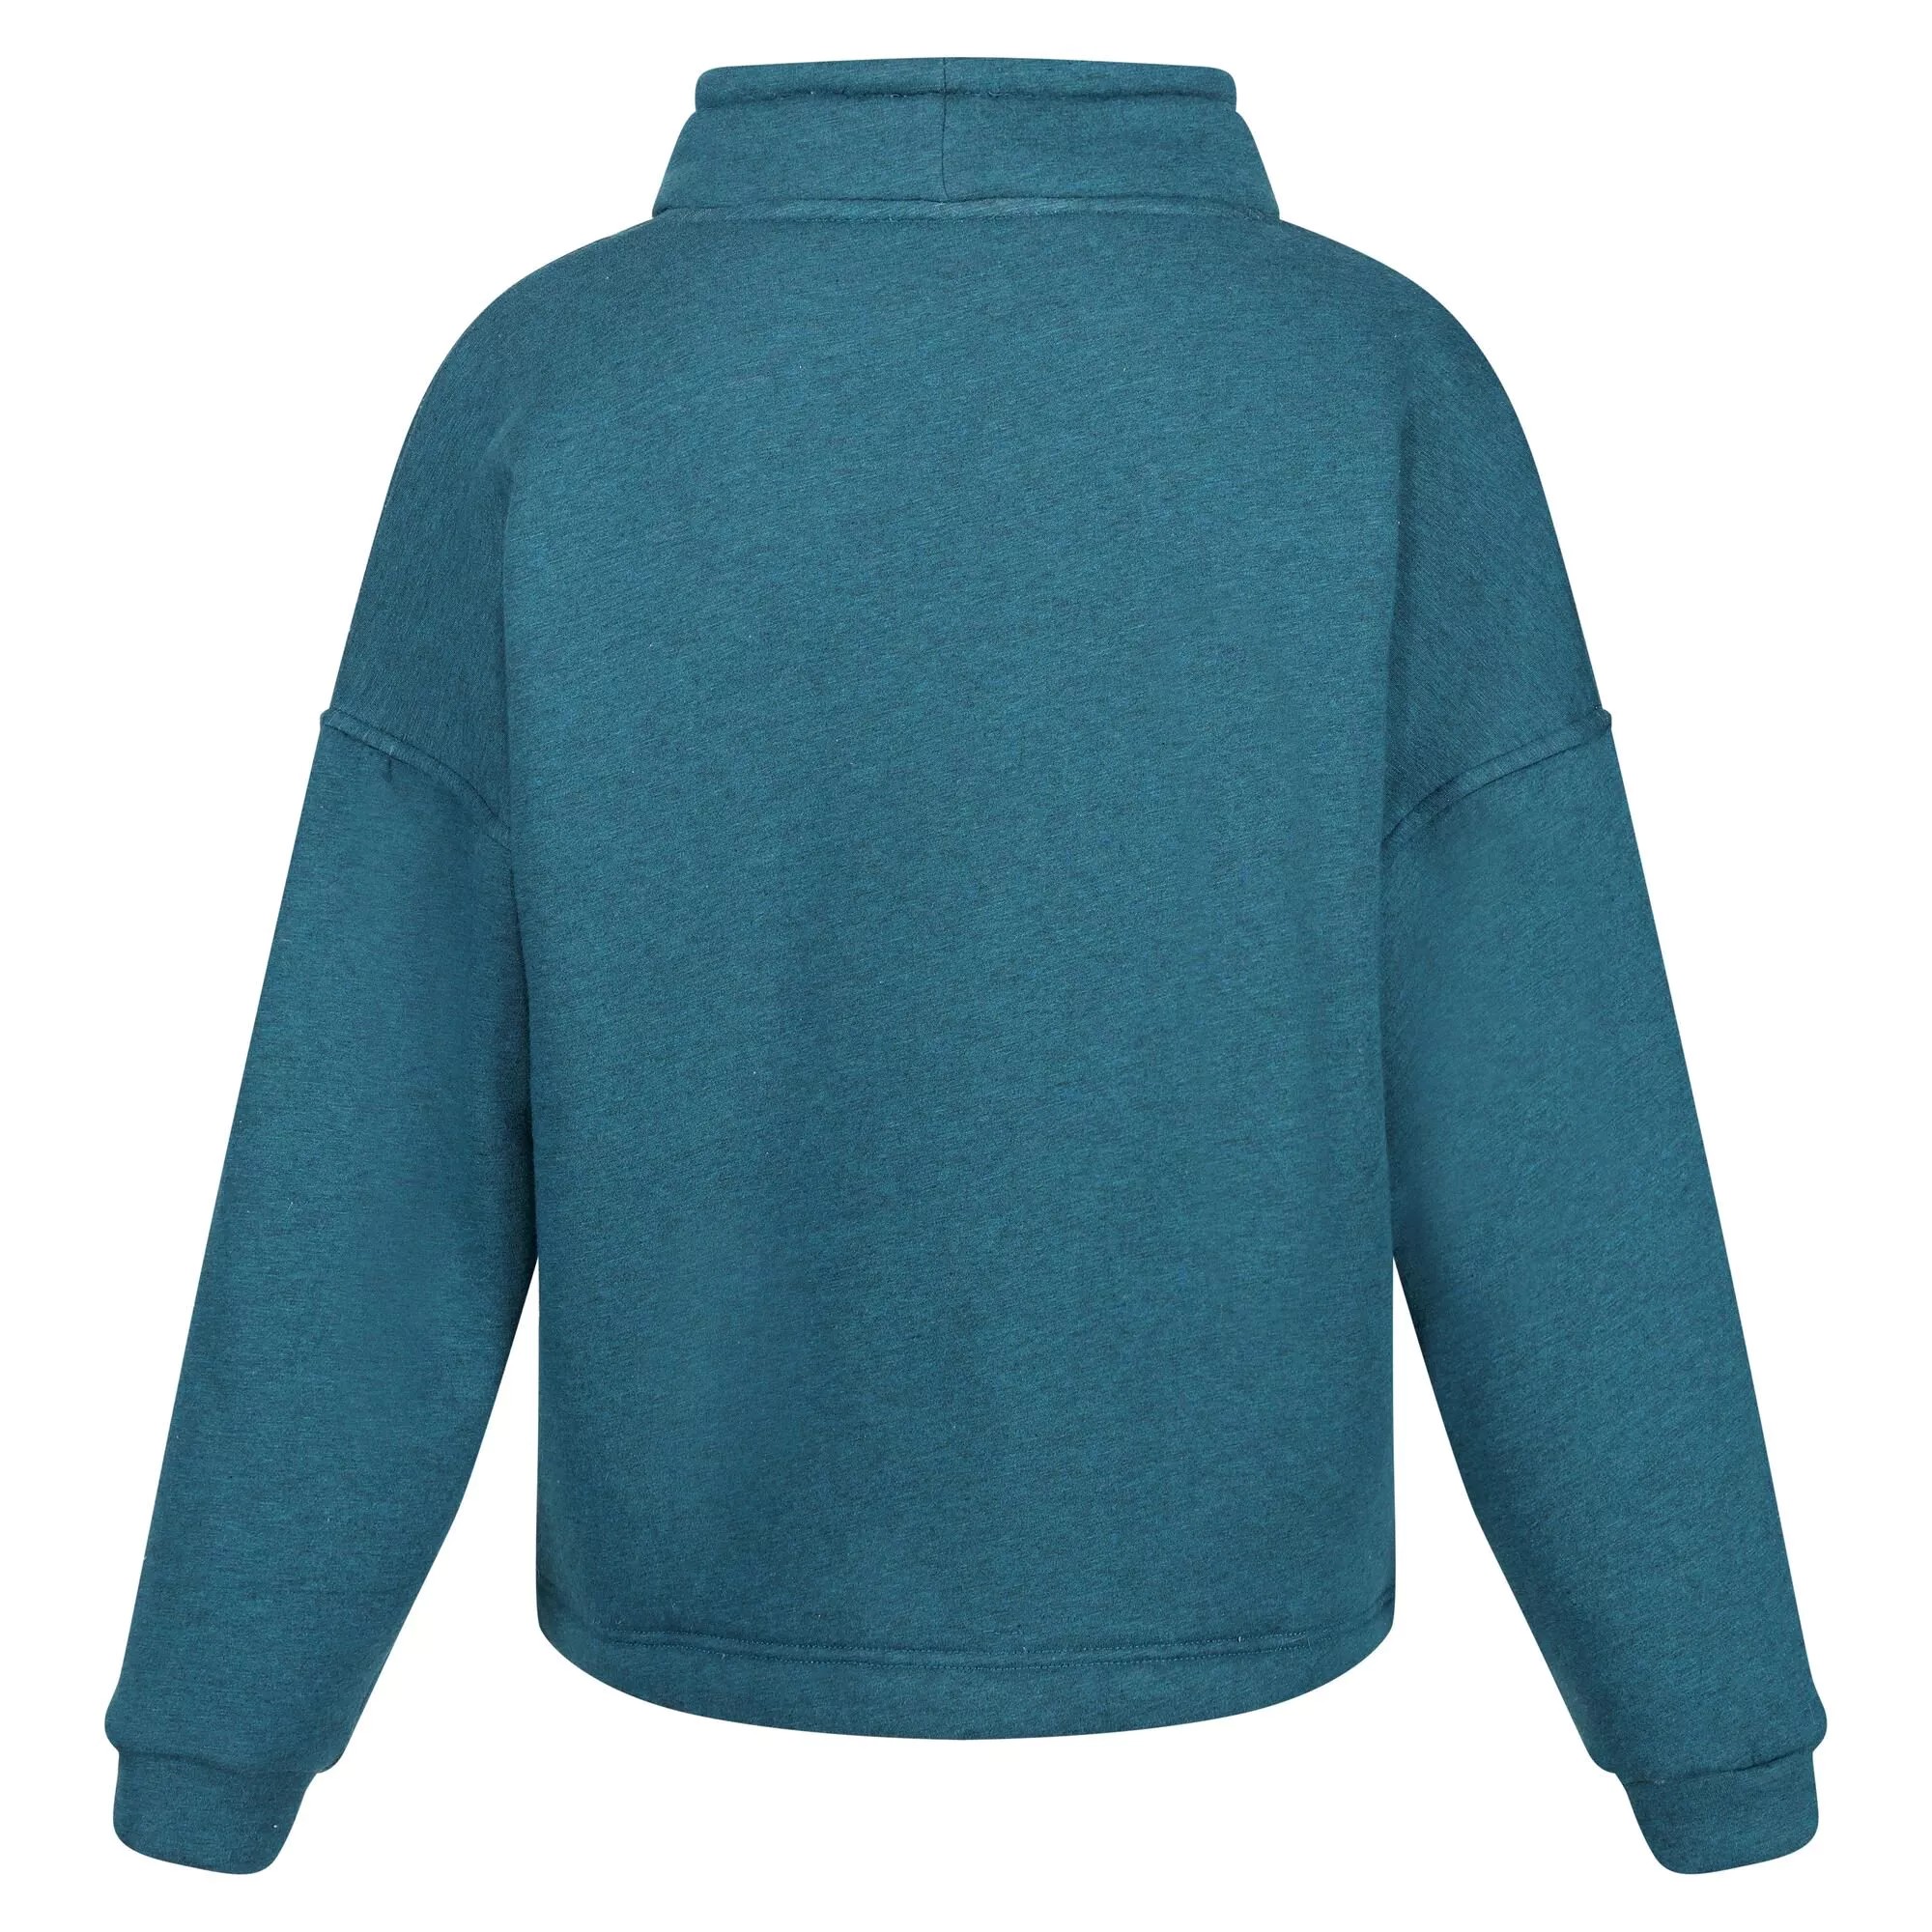 Marl Jersey Sweatshirt /ladies Regatta Janelle